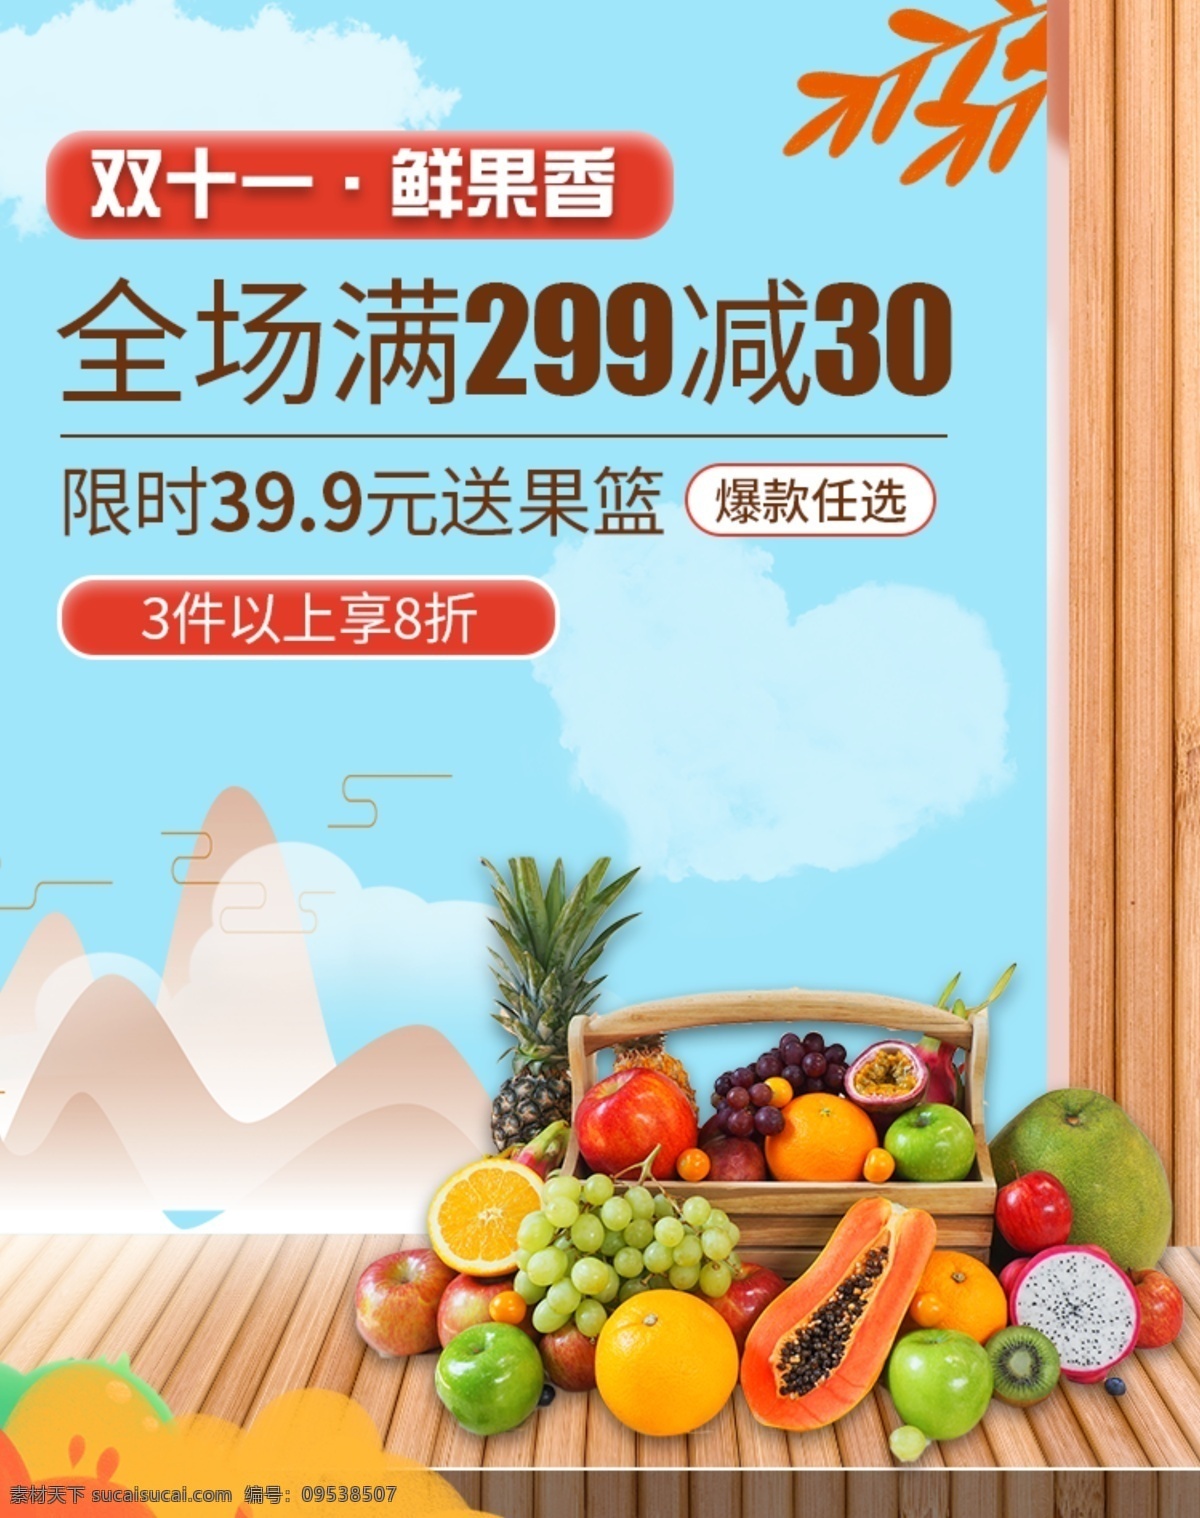 水果超市海报 水果 水果篮 超市海报 水果蔬菜 水果蔬菜海报 水果蔬菜超市 水果蔬菜展板 水果店促销 海报